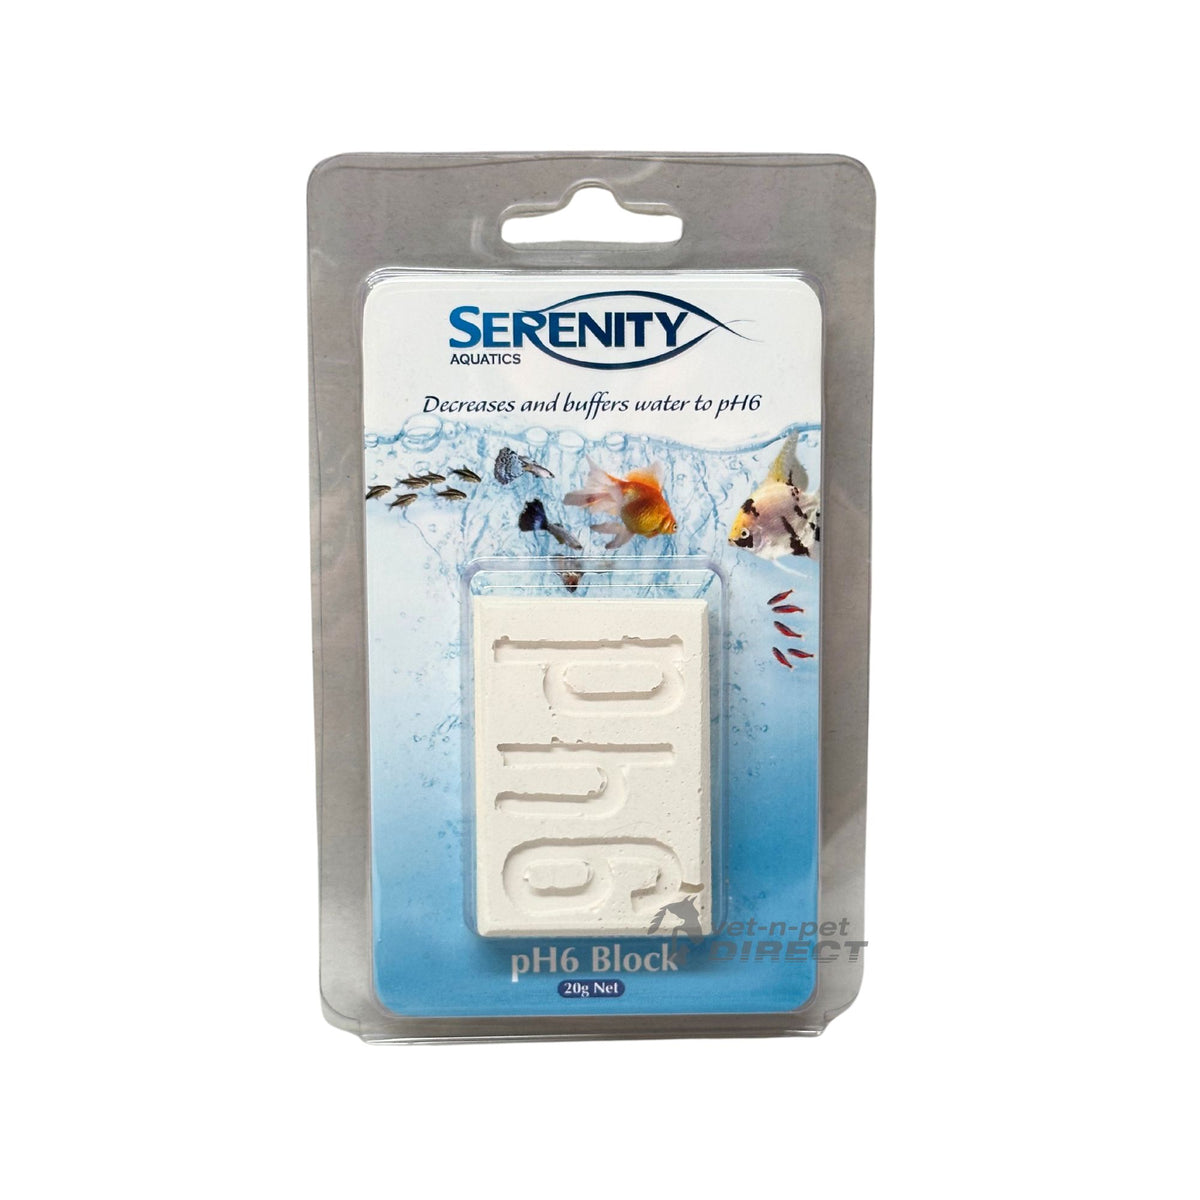 Serenity Aquatics pH6 Block